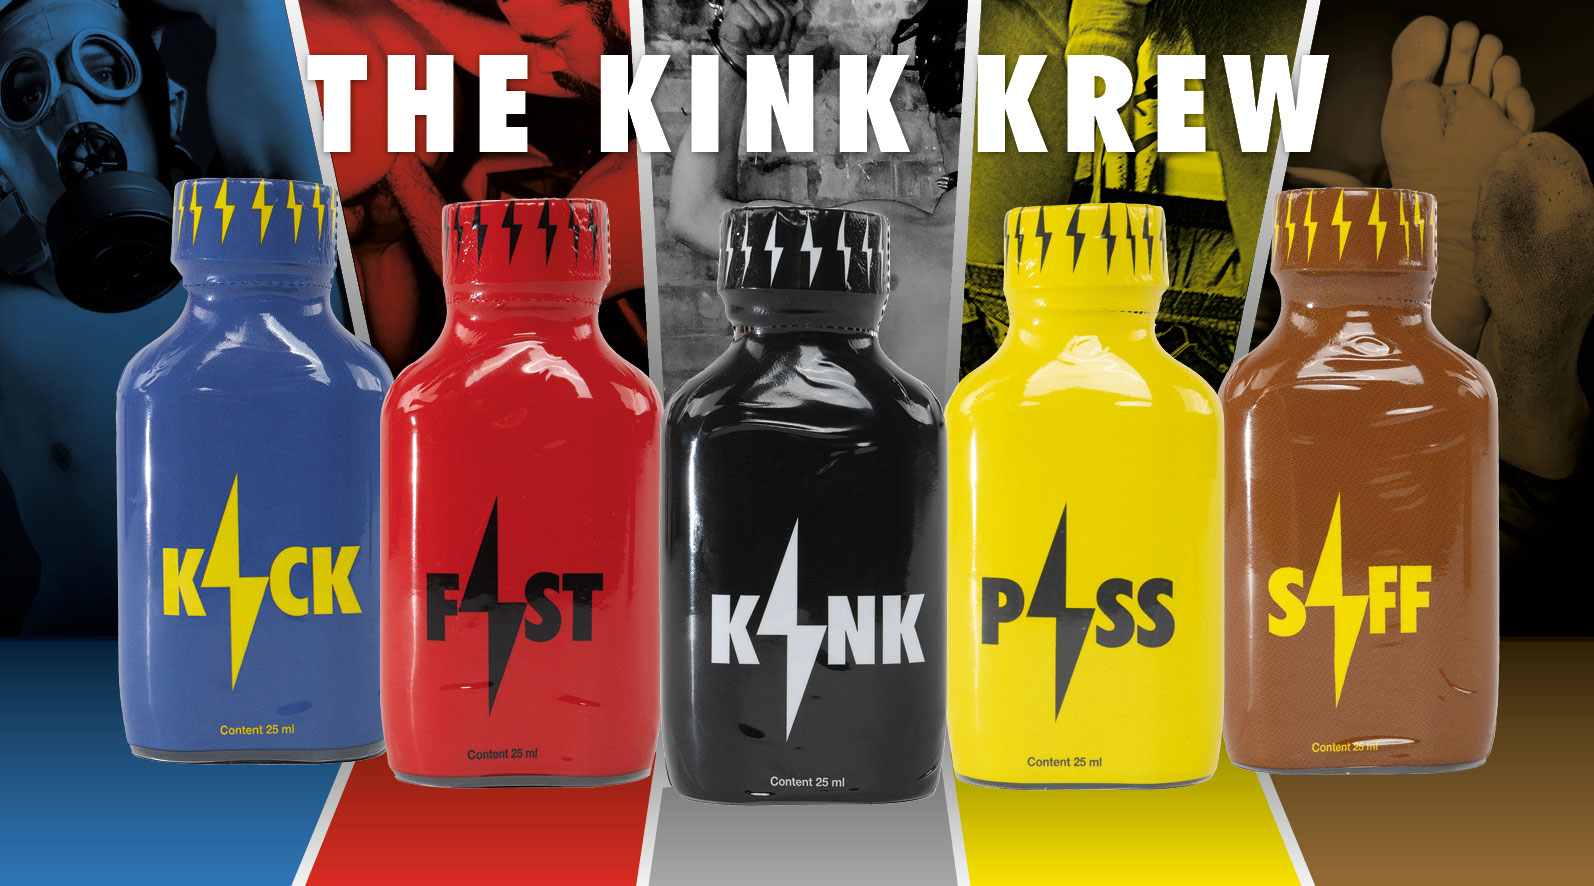 New Kink Krew - Fist, Kick, Kink, Piss, Siff